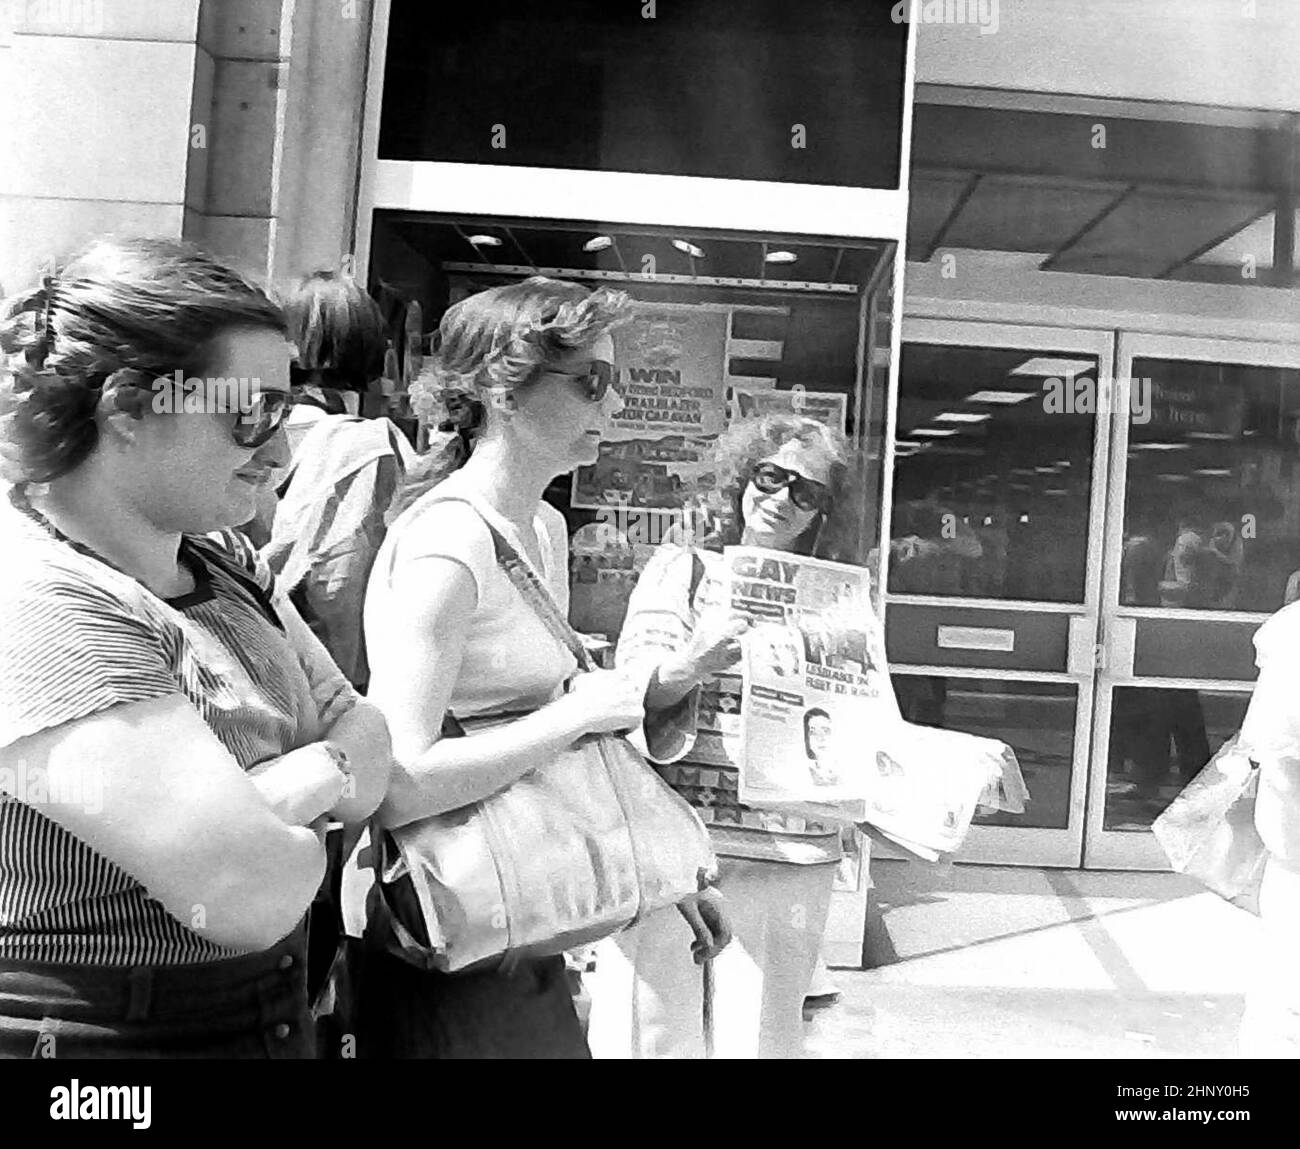 Una donna vende il giornale 'Gay News' ad una protesta del gruppo di attivisti gay Alliance fuori da un negozio di W H Smith a Londra, Inghilterra nell'estate 1978. W H Smith, come catena, aveva deciso di smettere di vendere il giornale 'Gay News', innescando le proteste. I gruppi della Gay Activists Alliance in tutto il regno unito hanno protestato in molti negozi diversi di W H Smith in quel periodo. Foto Stock